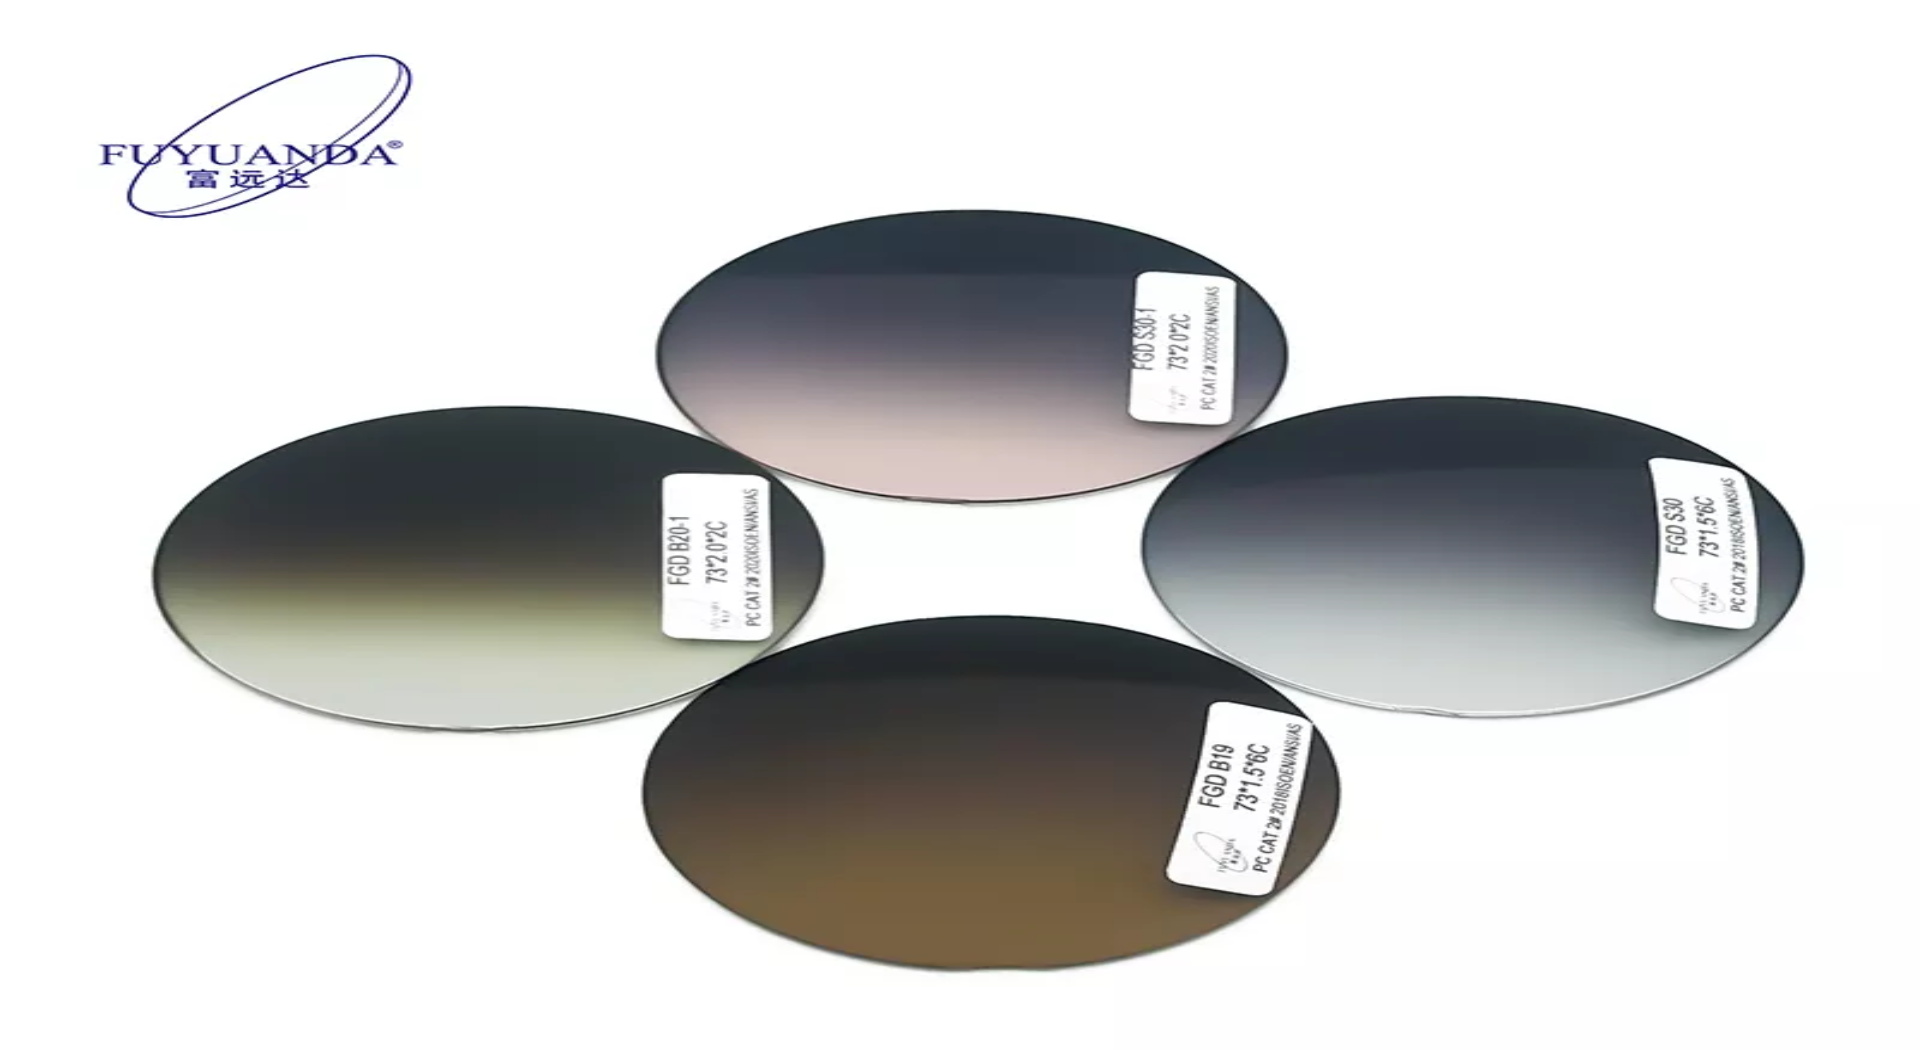 polycarbonate lenses